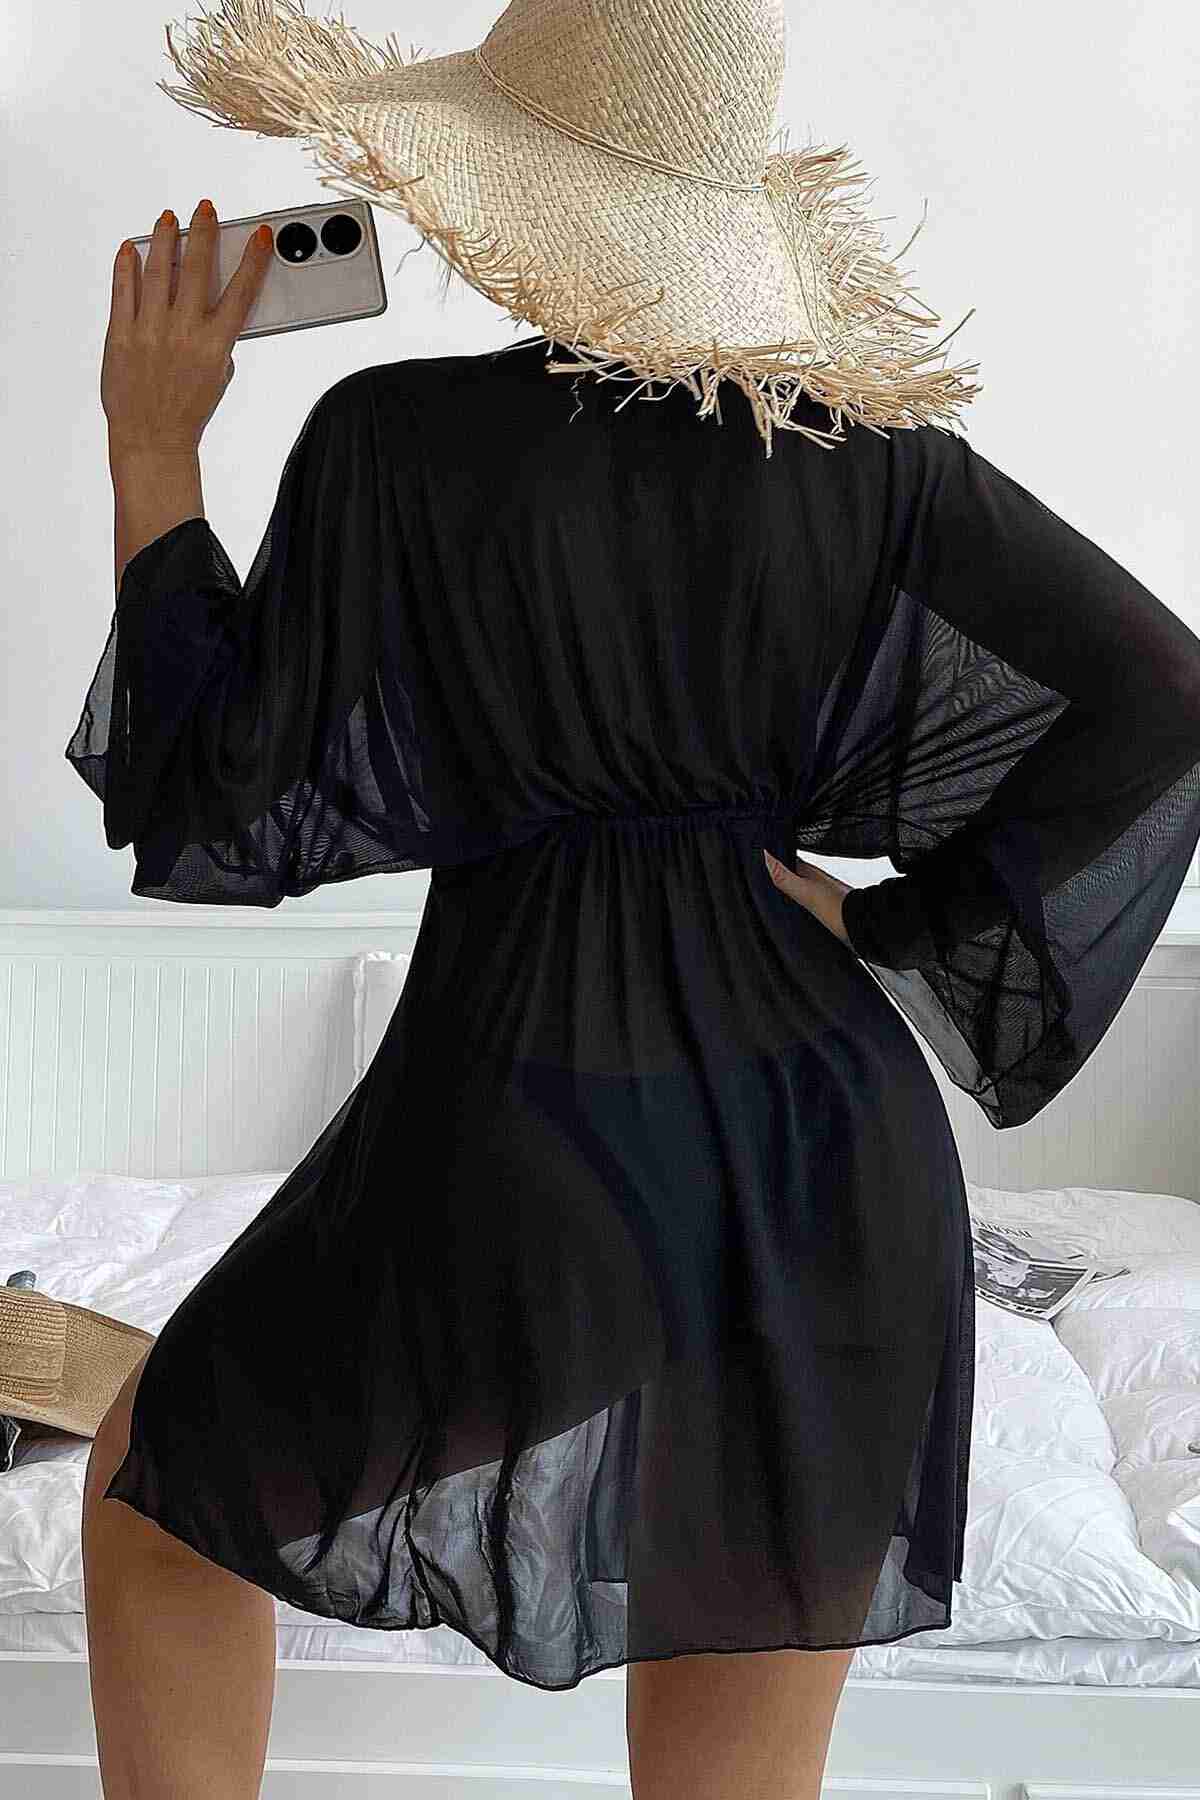 Angelsin Uzun Önden Bağlamalı Plaj Elbisesi Pareo Kimono Siyah